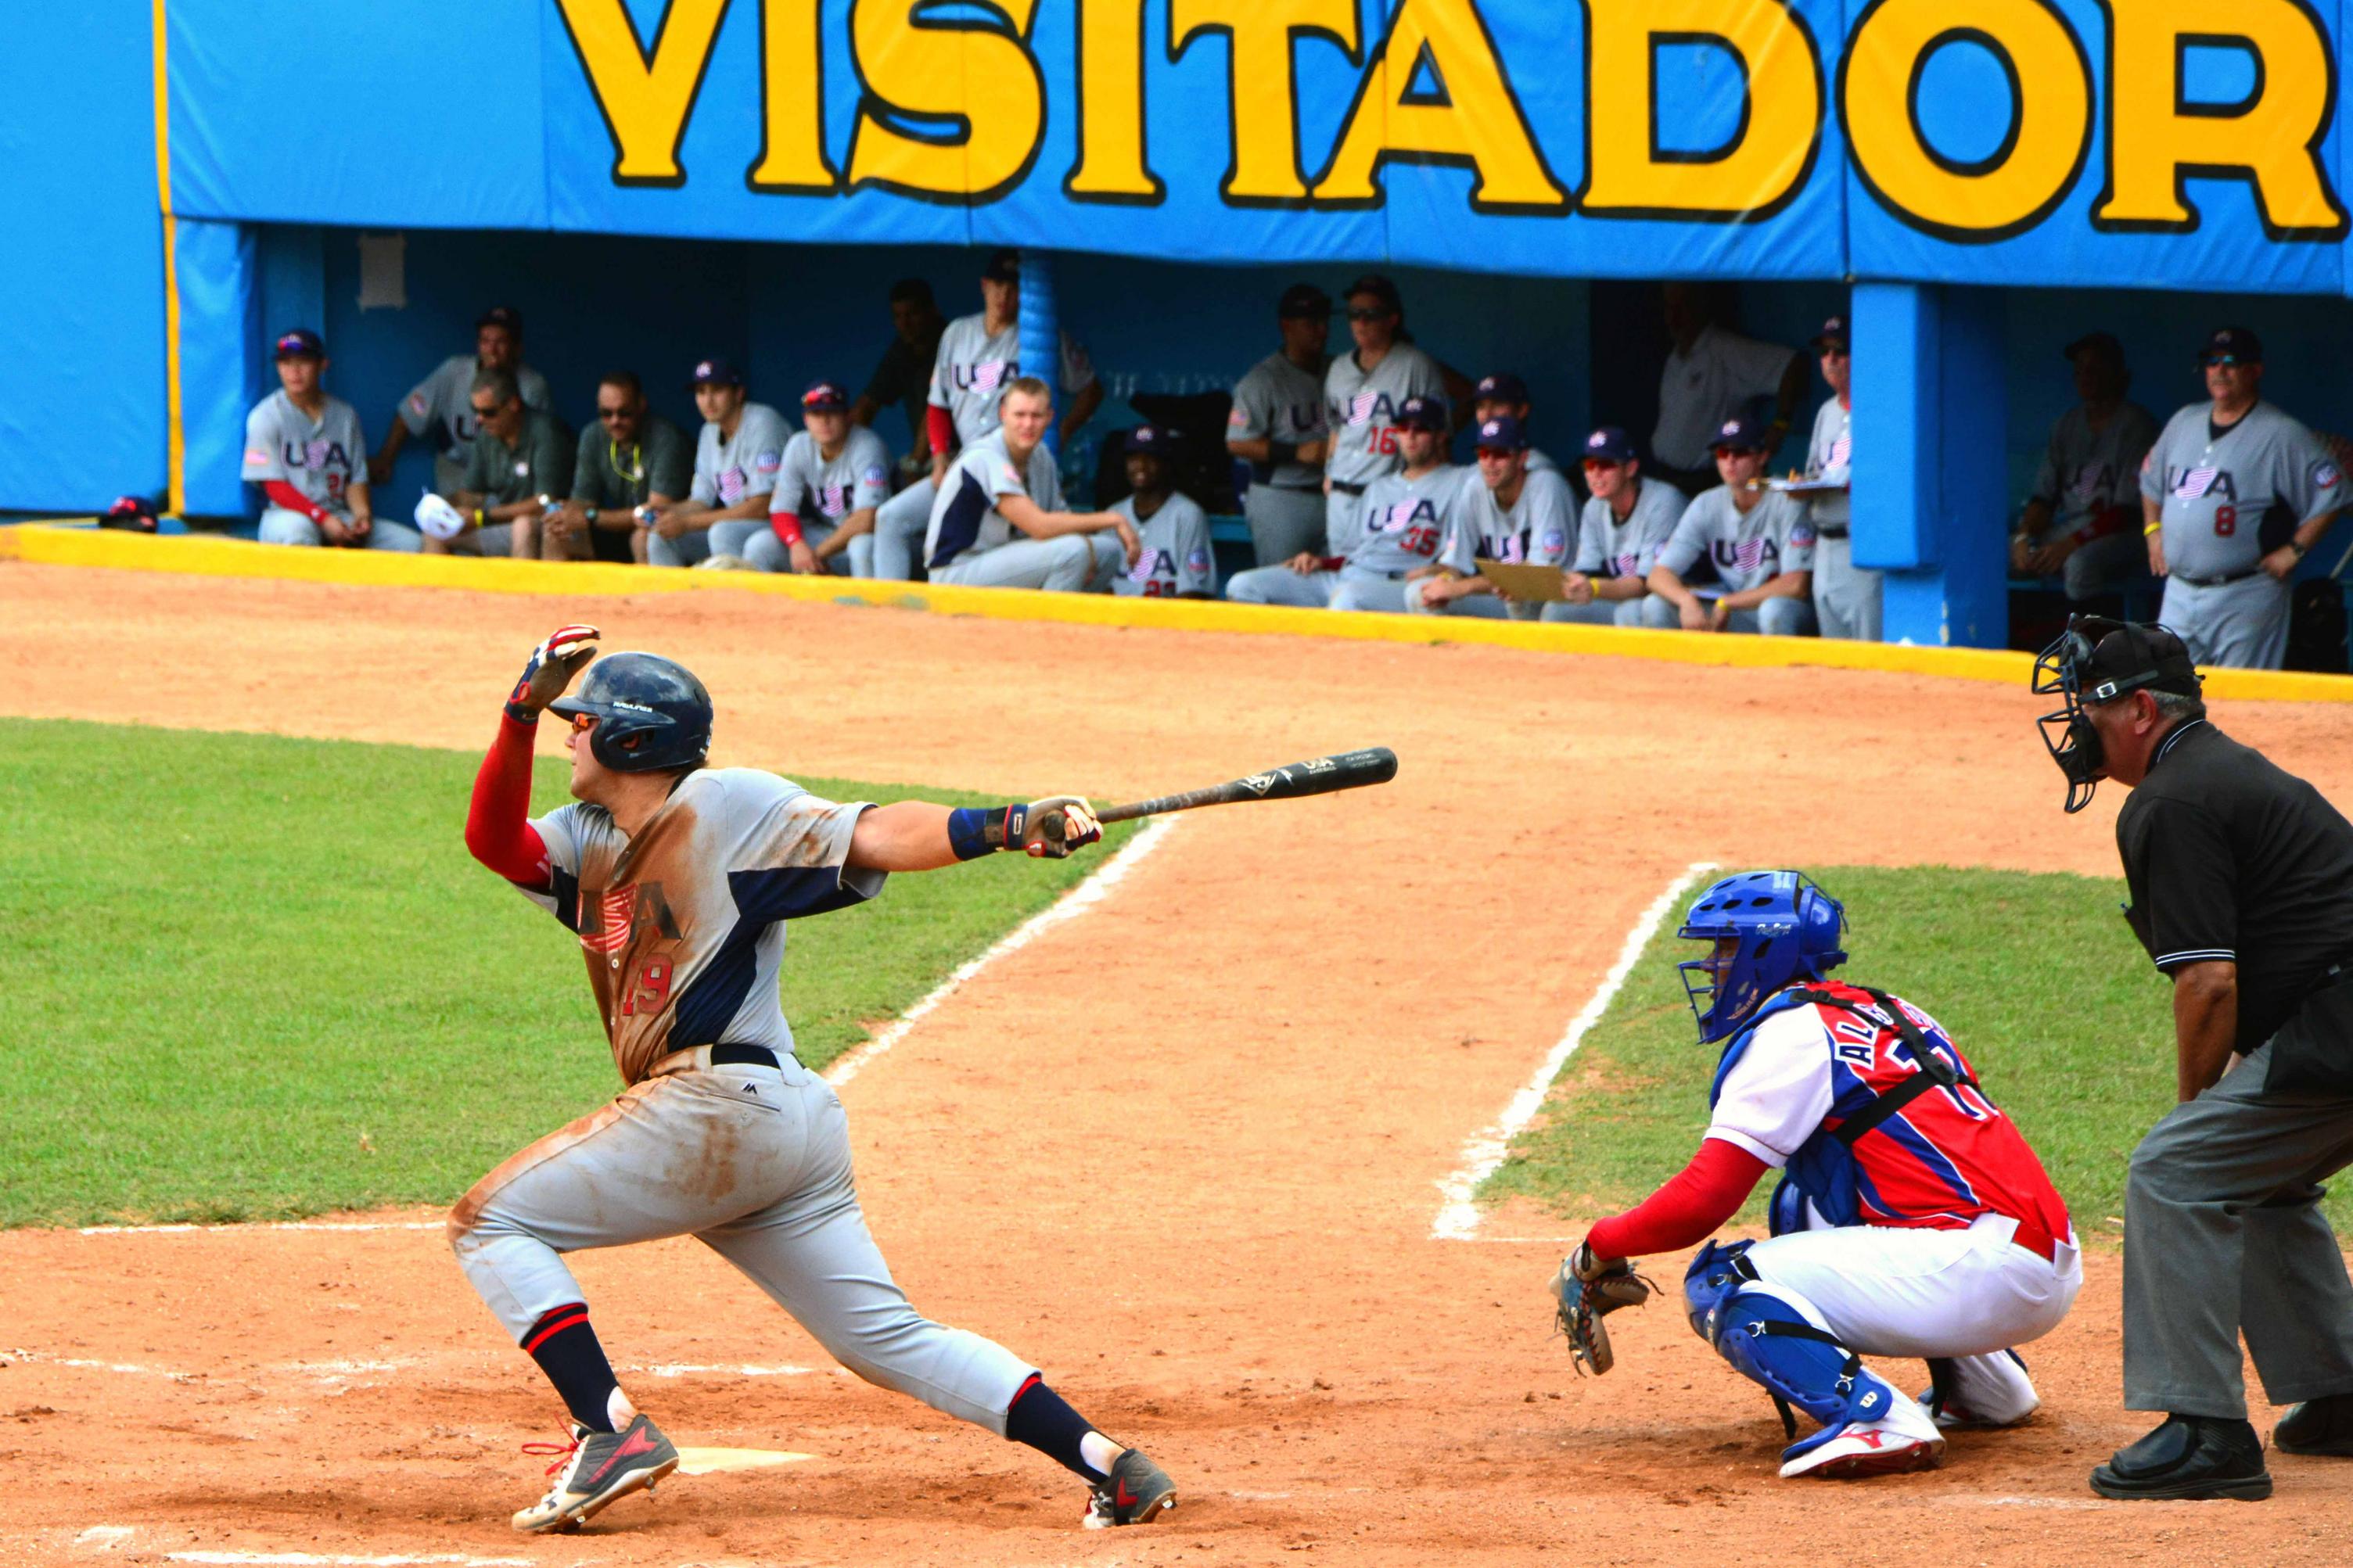 Momentos del primer juego del tope bilateral de béisbol entre Cuba y EE.UU. en el 2016. FOTO: Osvaldo Gutiérrez Gómez